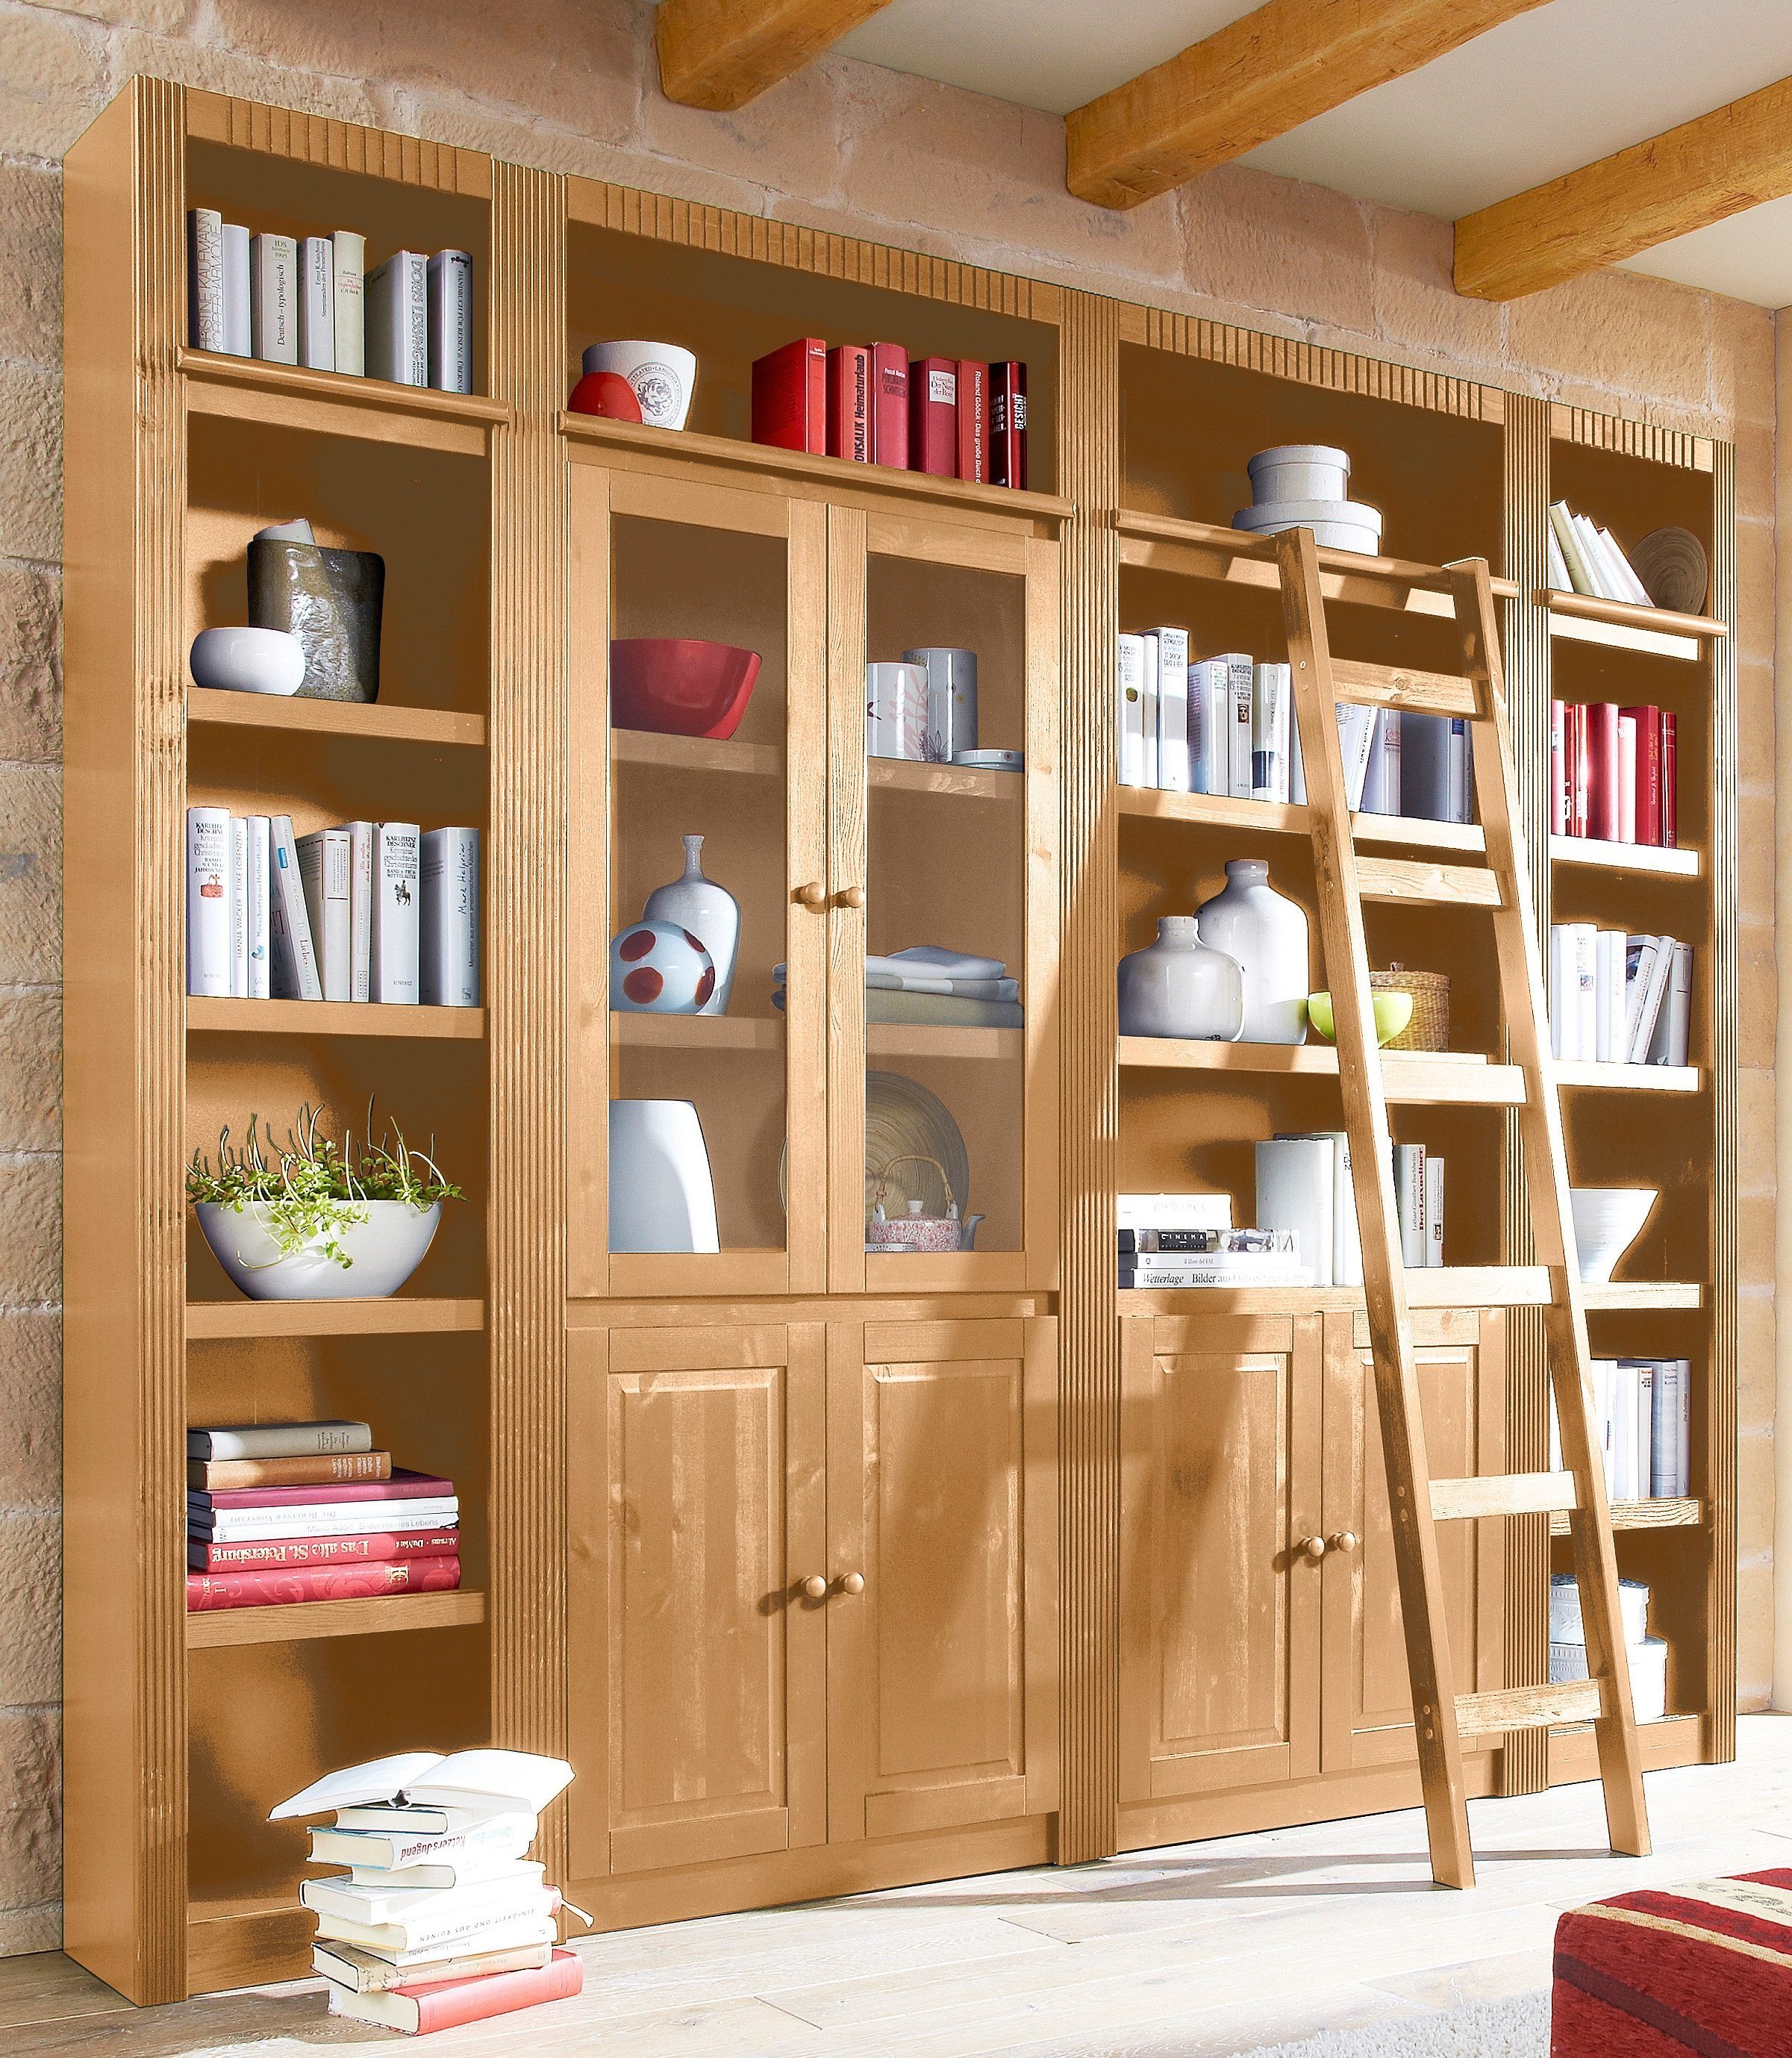 Home affaire Bücherwand Bergen, aus massivem schönen Kiefernholz, Breite 255 cm